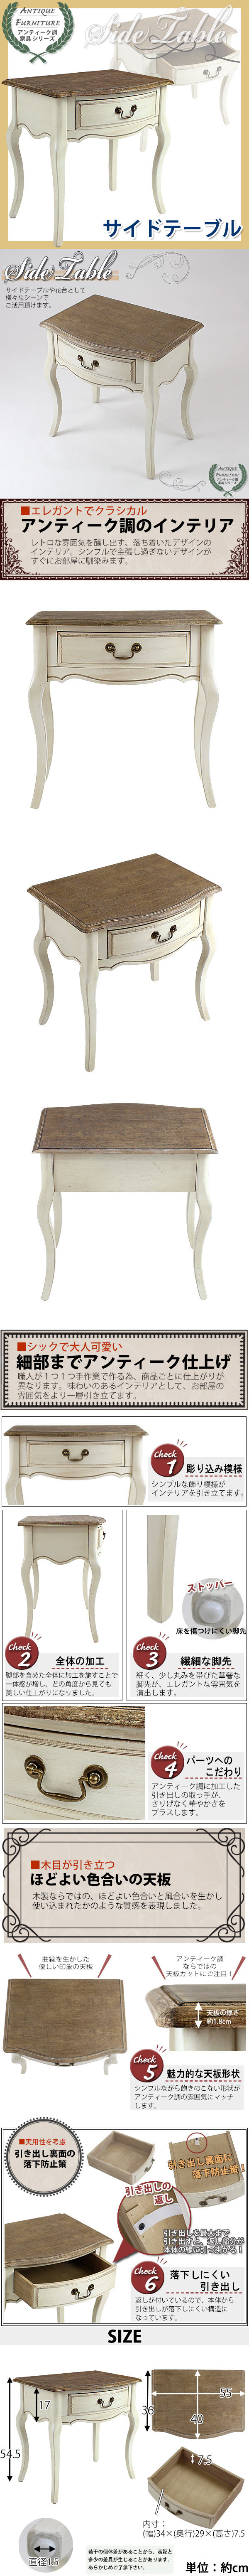 海外製アンティーク調 サイドテーブル 木製 家具 白 花台 テーブル サイドテーブル